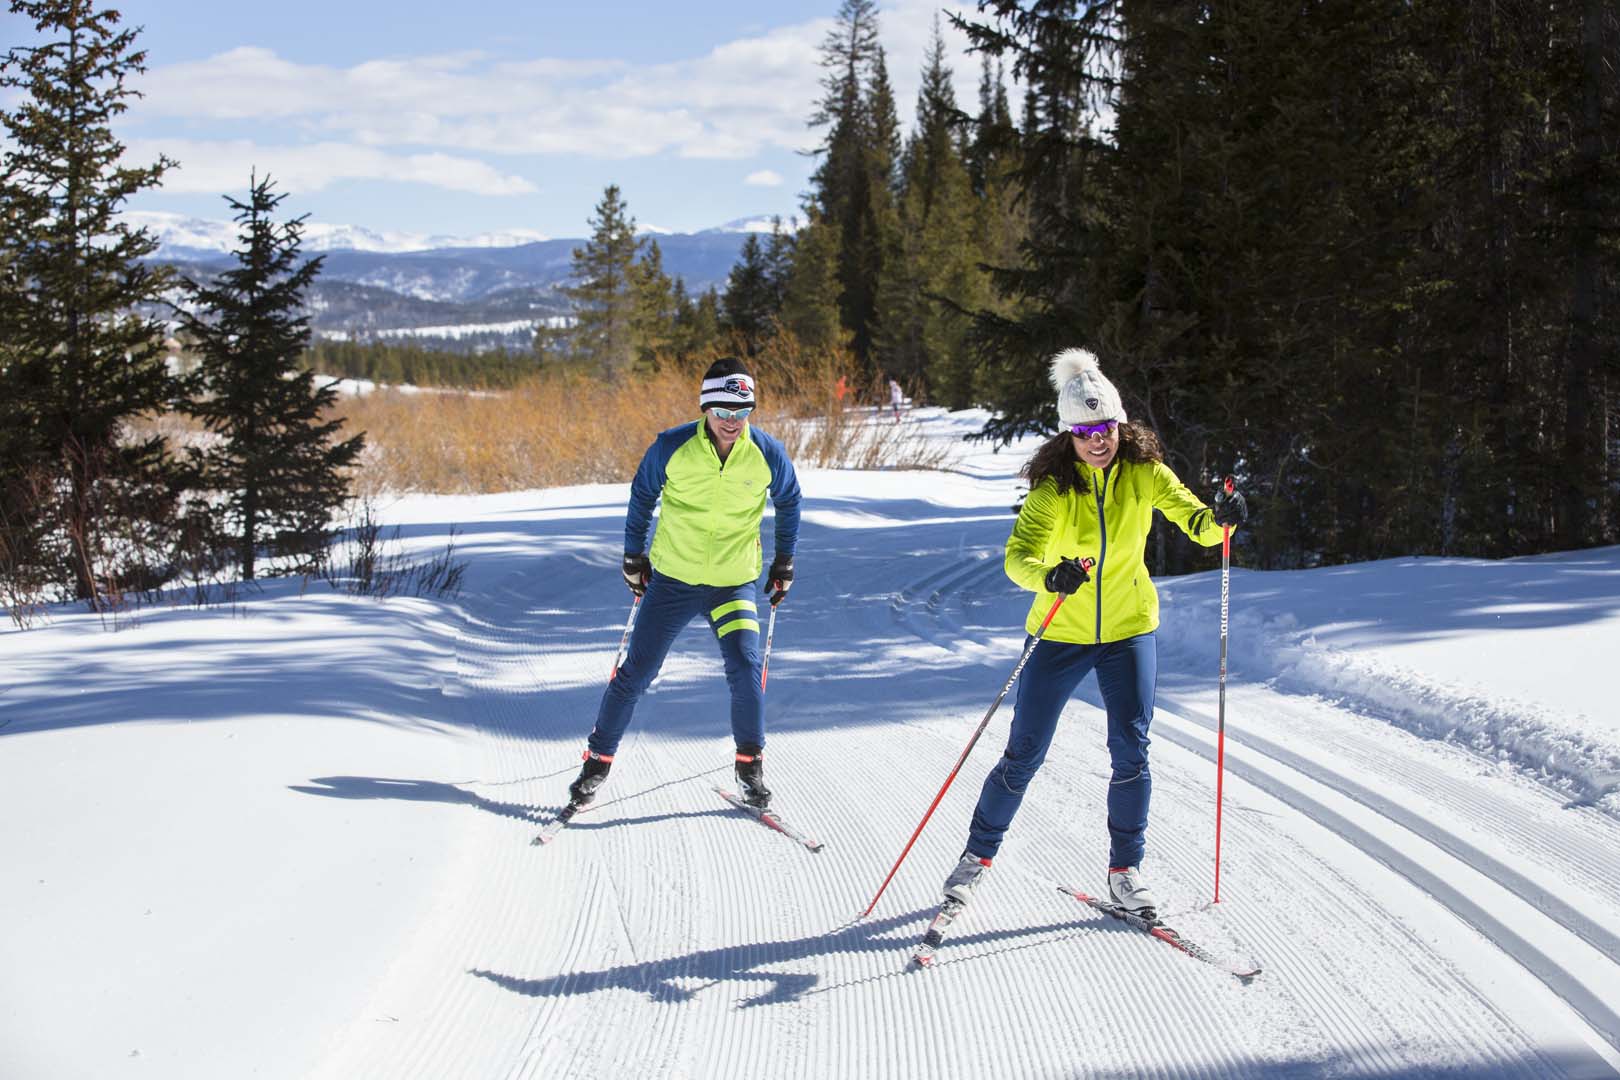 Two people doing nordic skiing